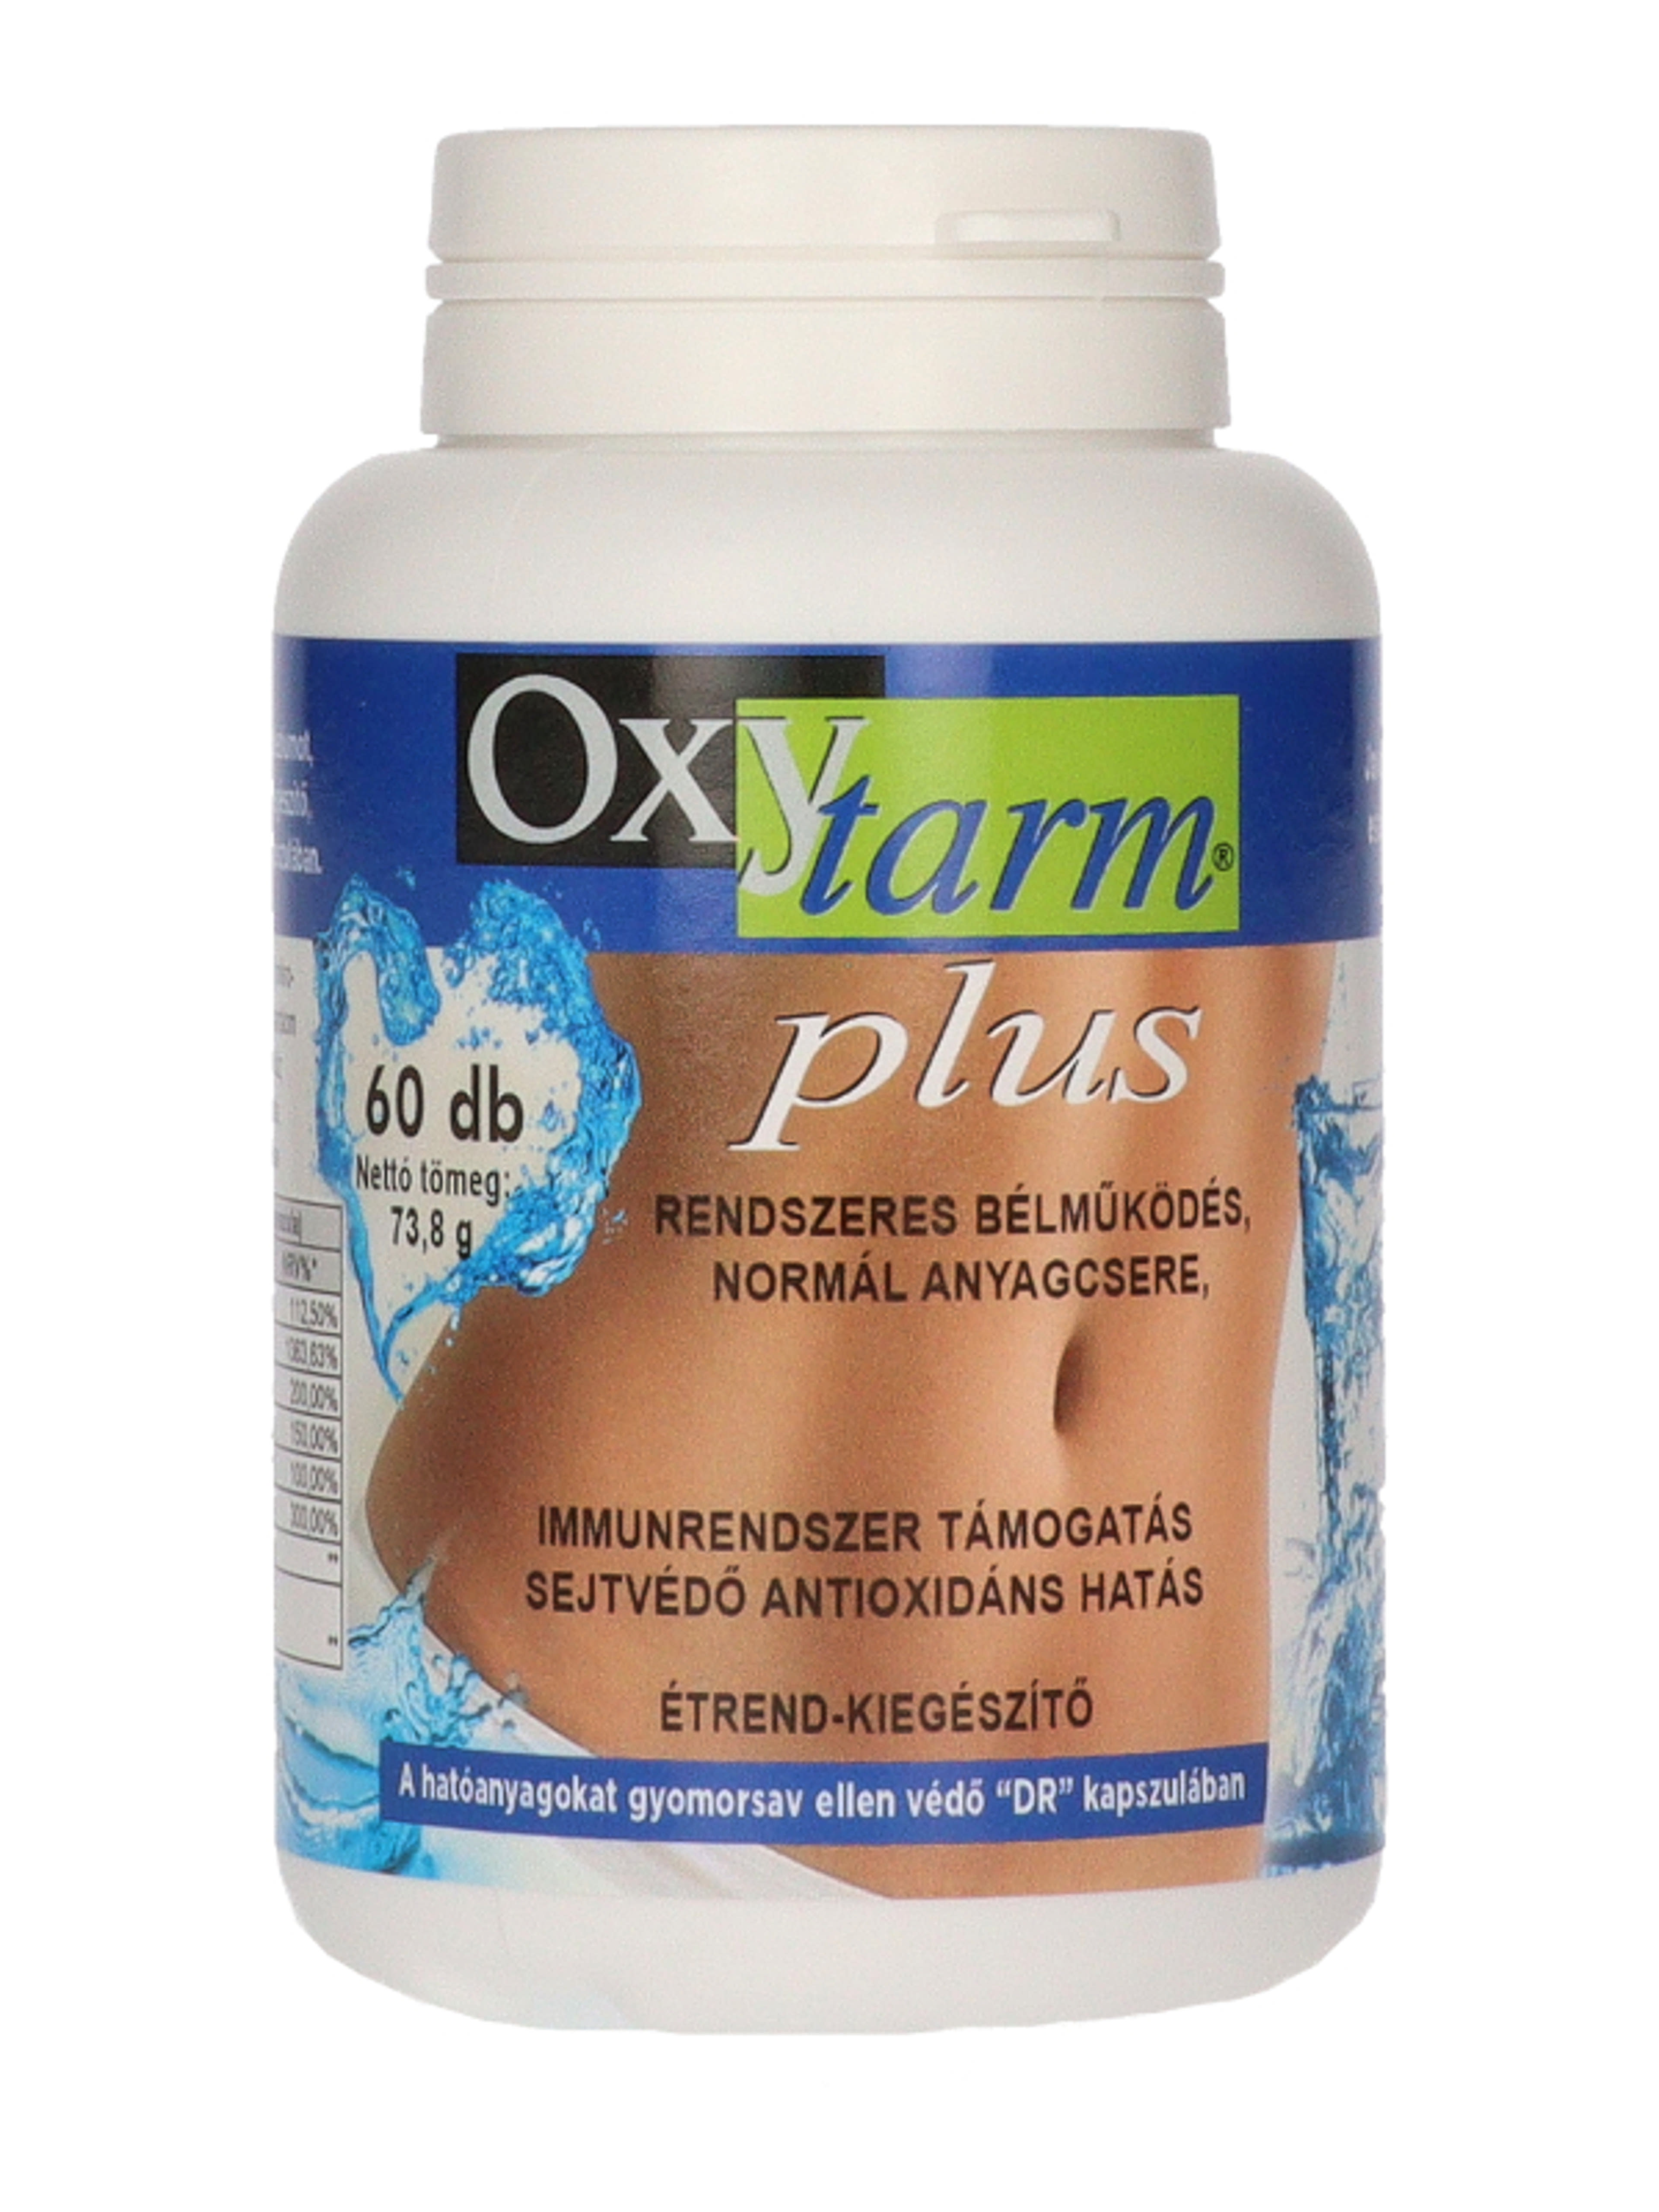 Oxytarm Plus étrend-kiegészítő tabletta - 60 db-3